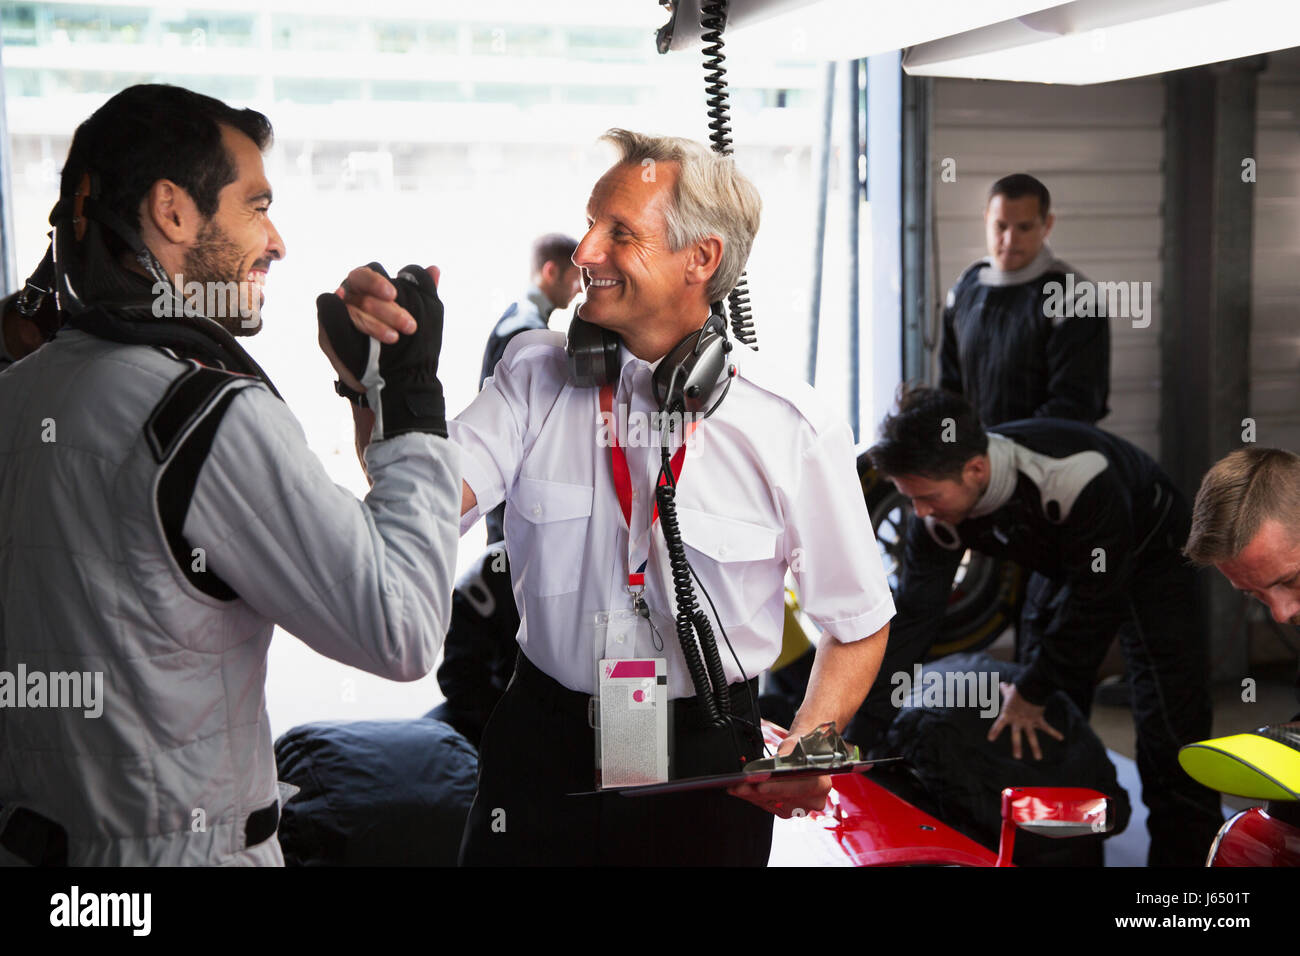 Manager und Formel 1-Fahrer feiern, Handshaking in Werkstatt Stockfoto